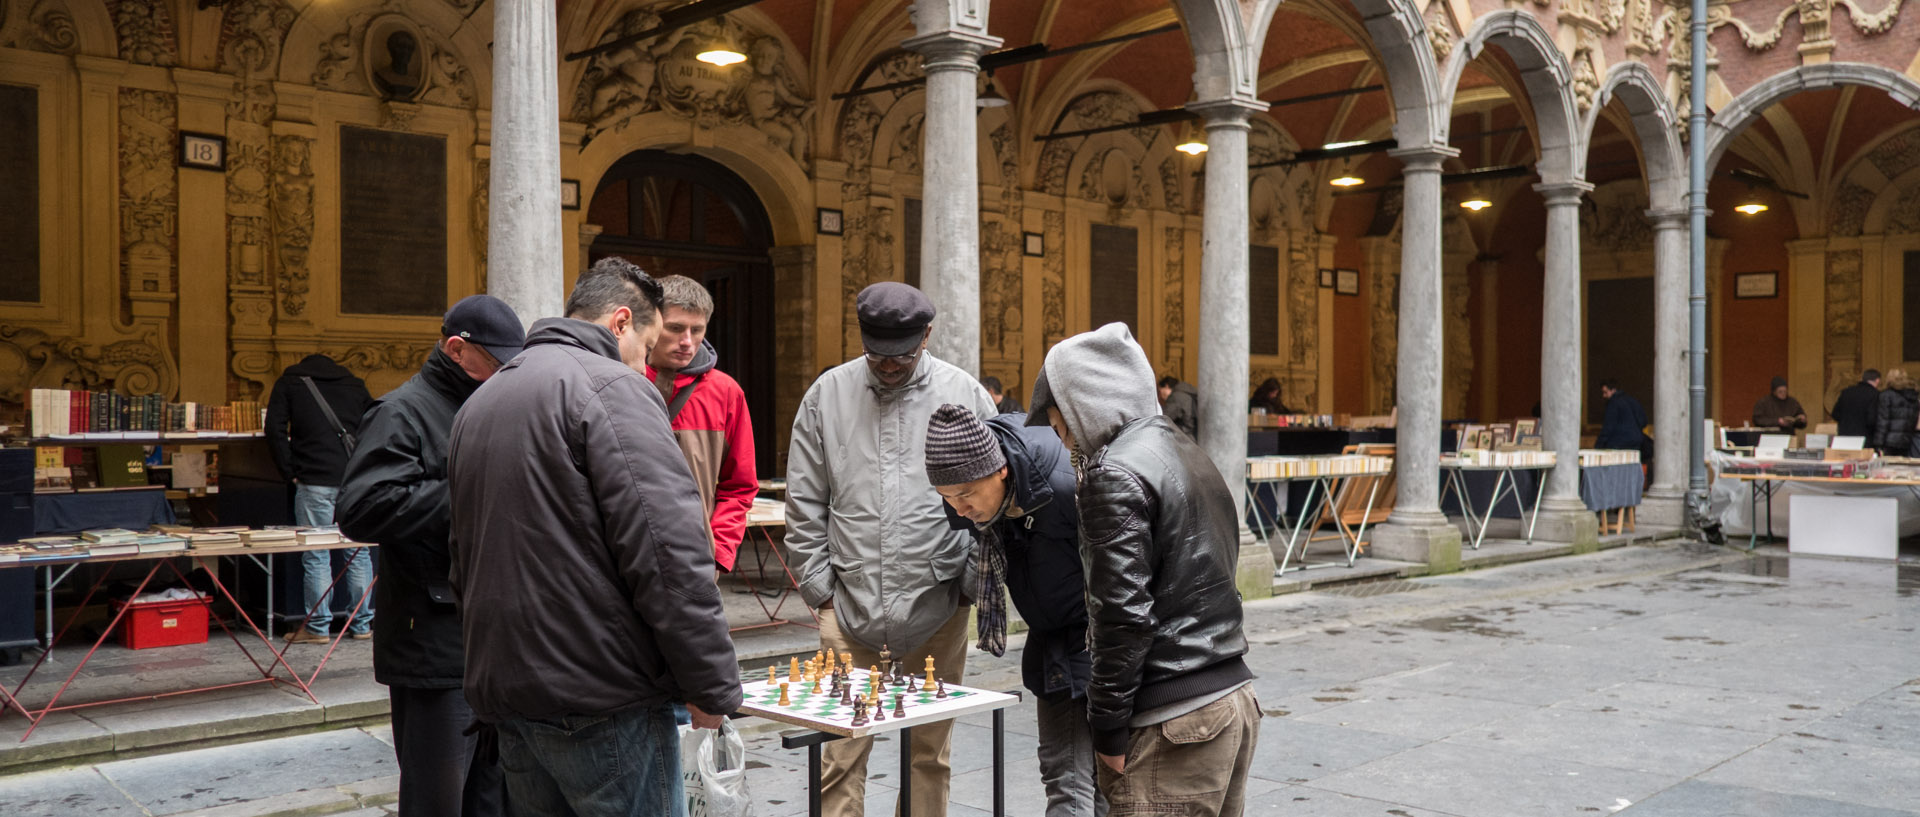 Partie d'échecs à la vieille bourse de Lille.